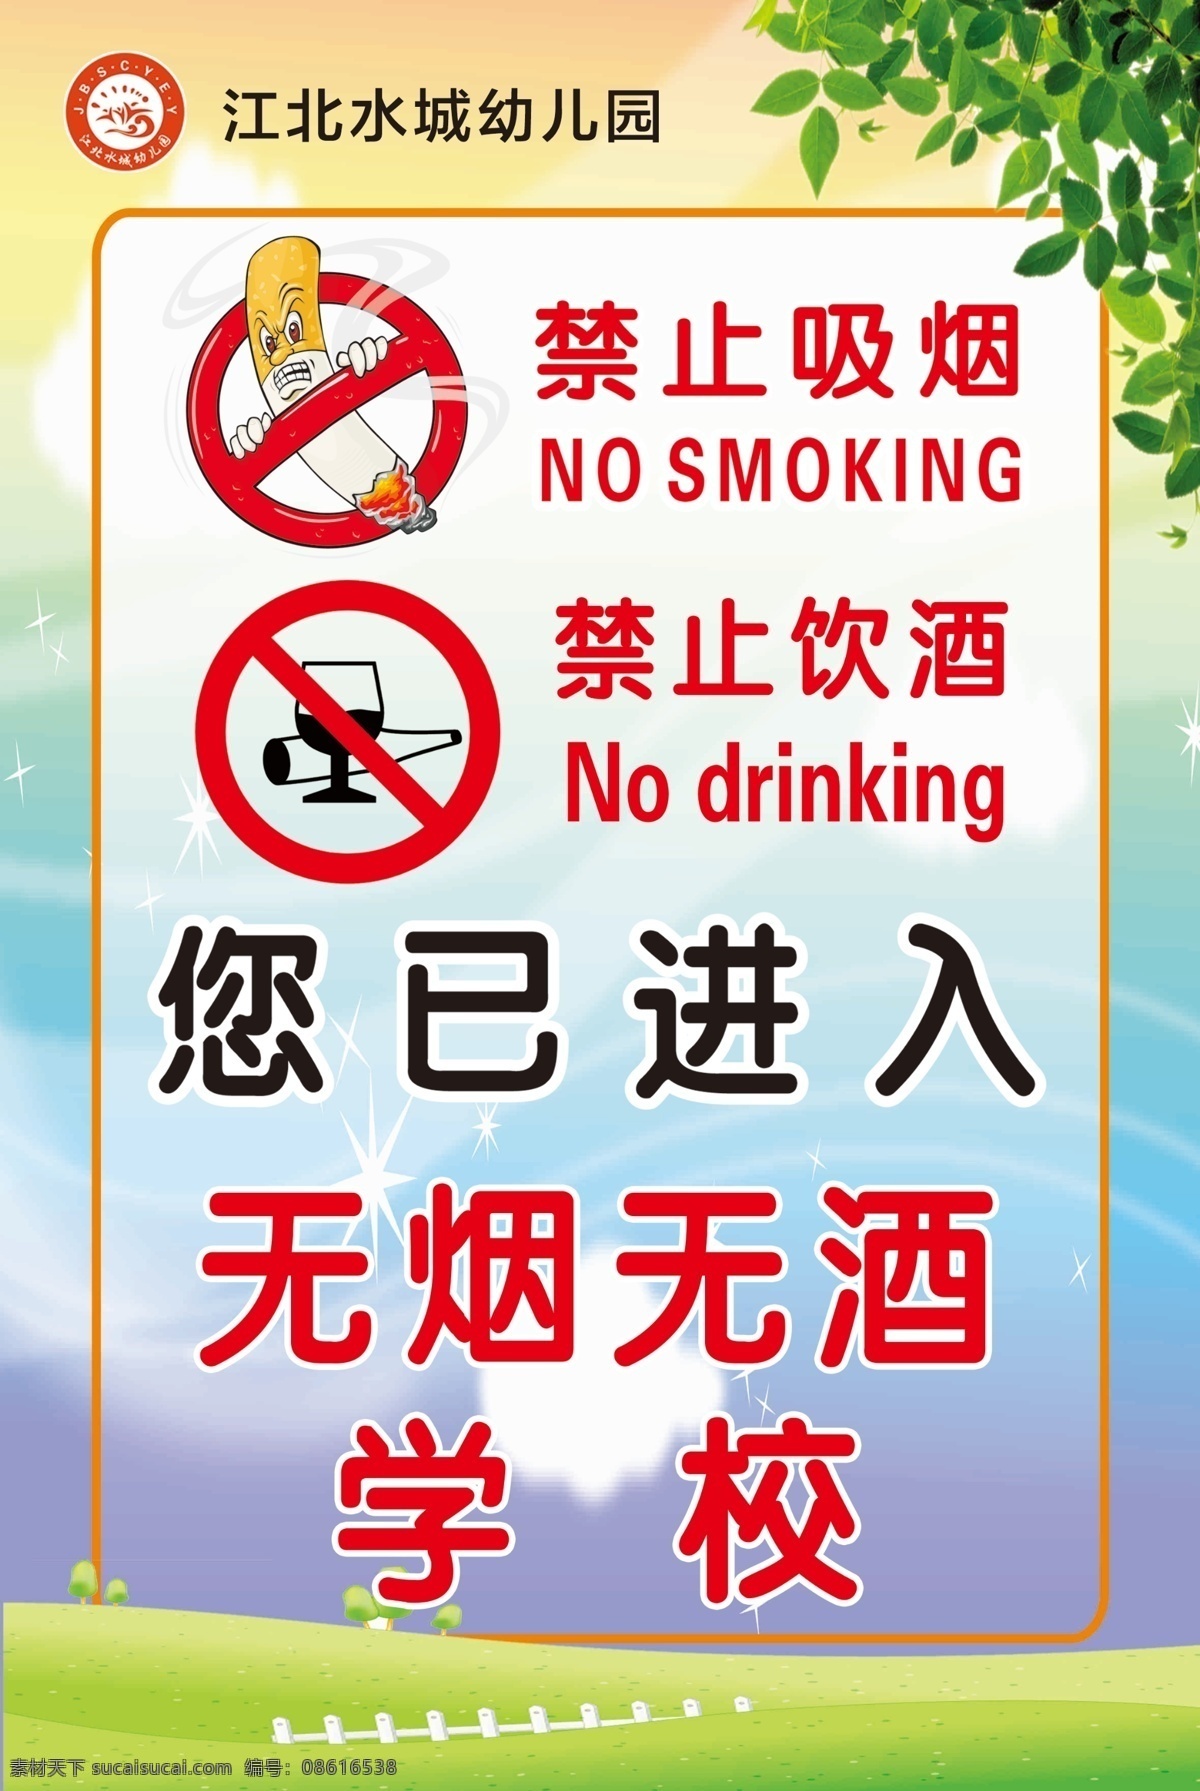 无烟学校 禁止吸烟 禁止饮酒 无烟 无酒 学校 无烟无酒